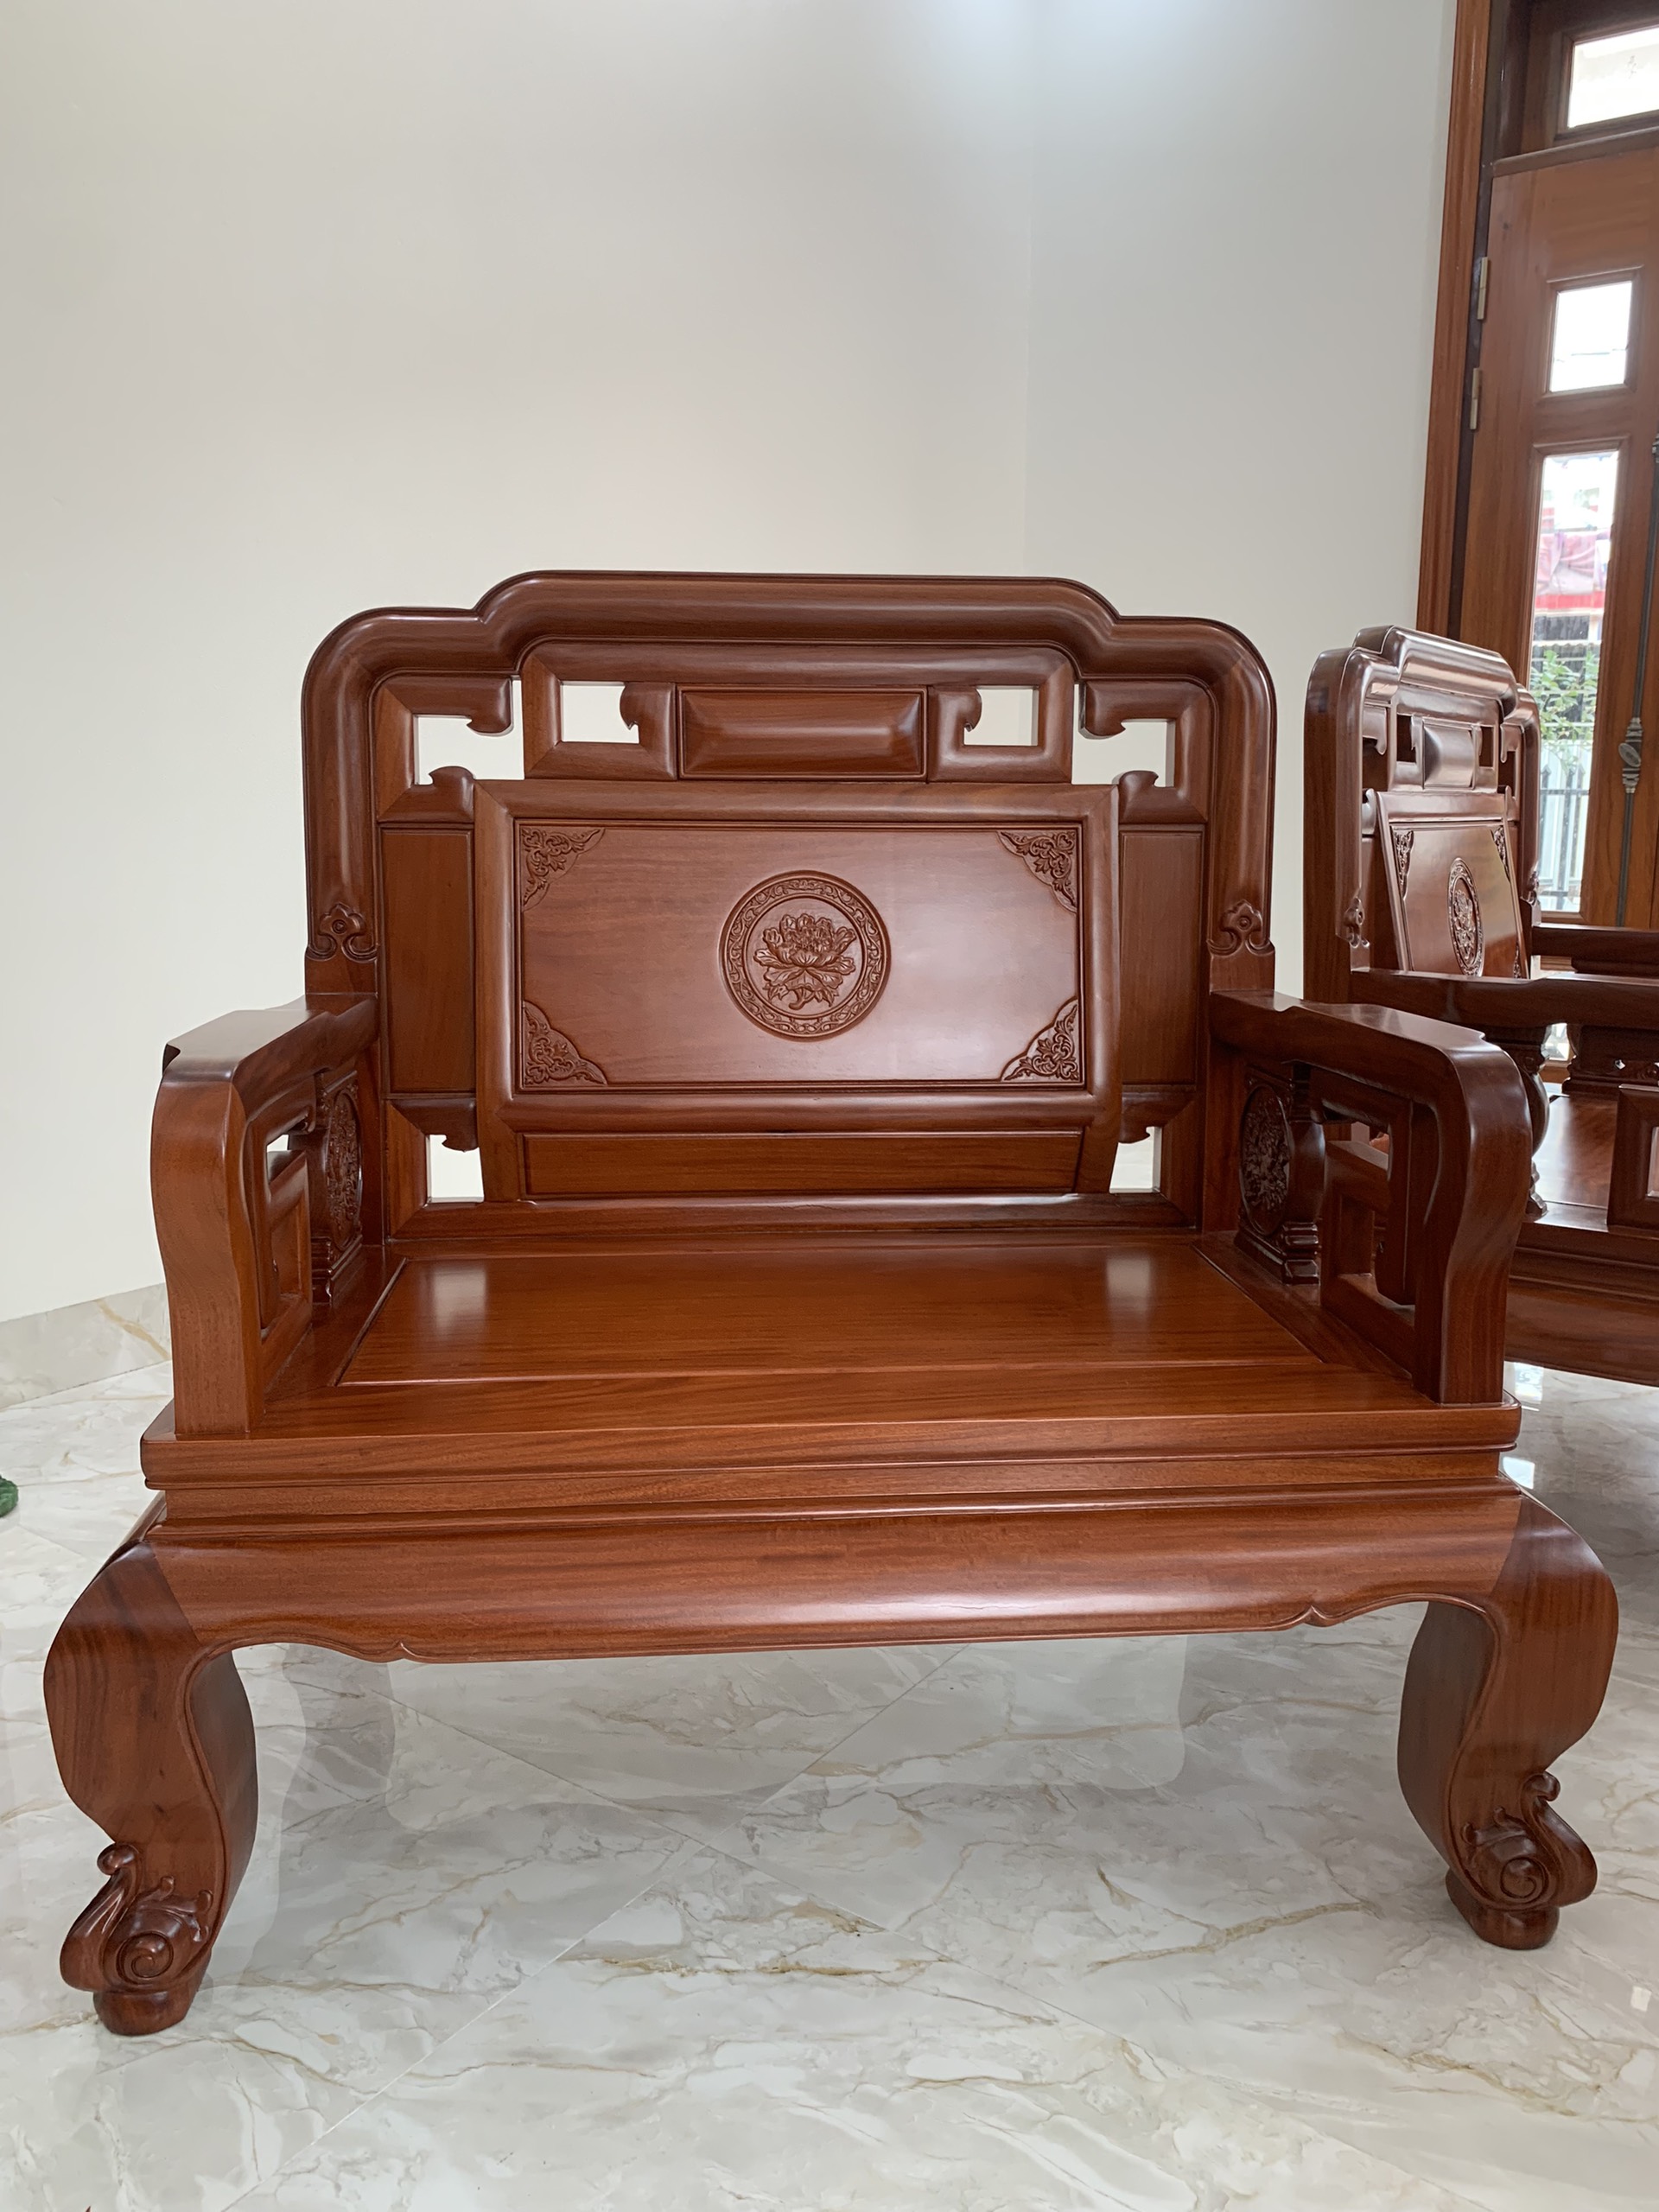 Bộ bàn ghế quốc sắc thiên hương gỗ hương Lào